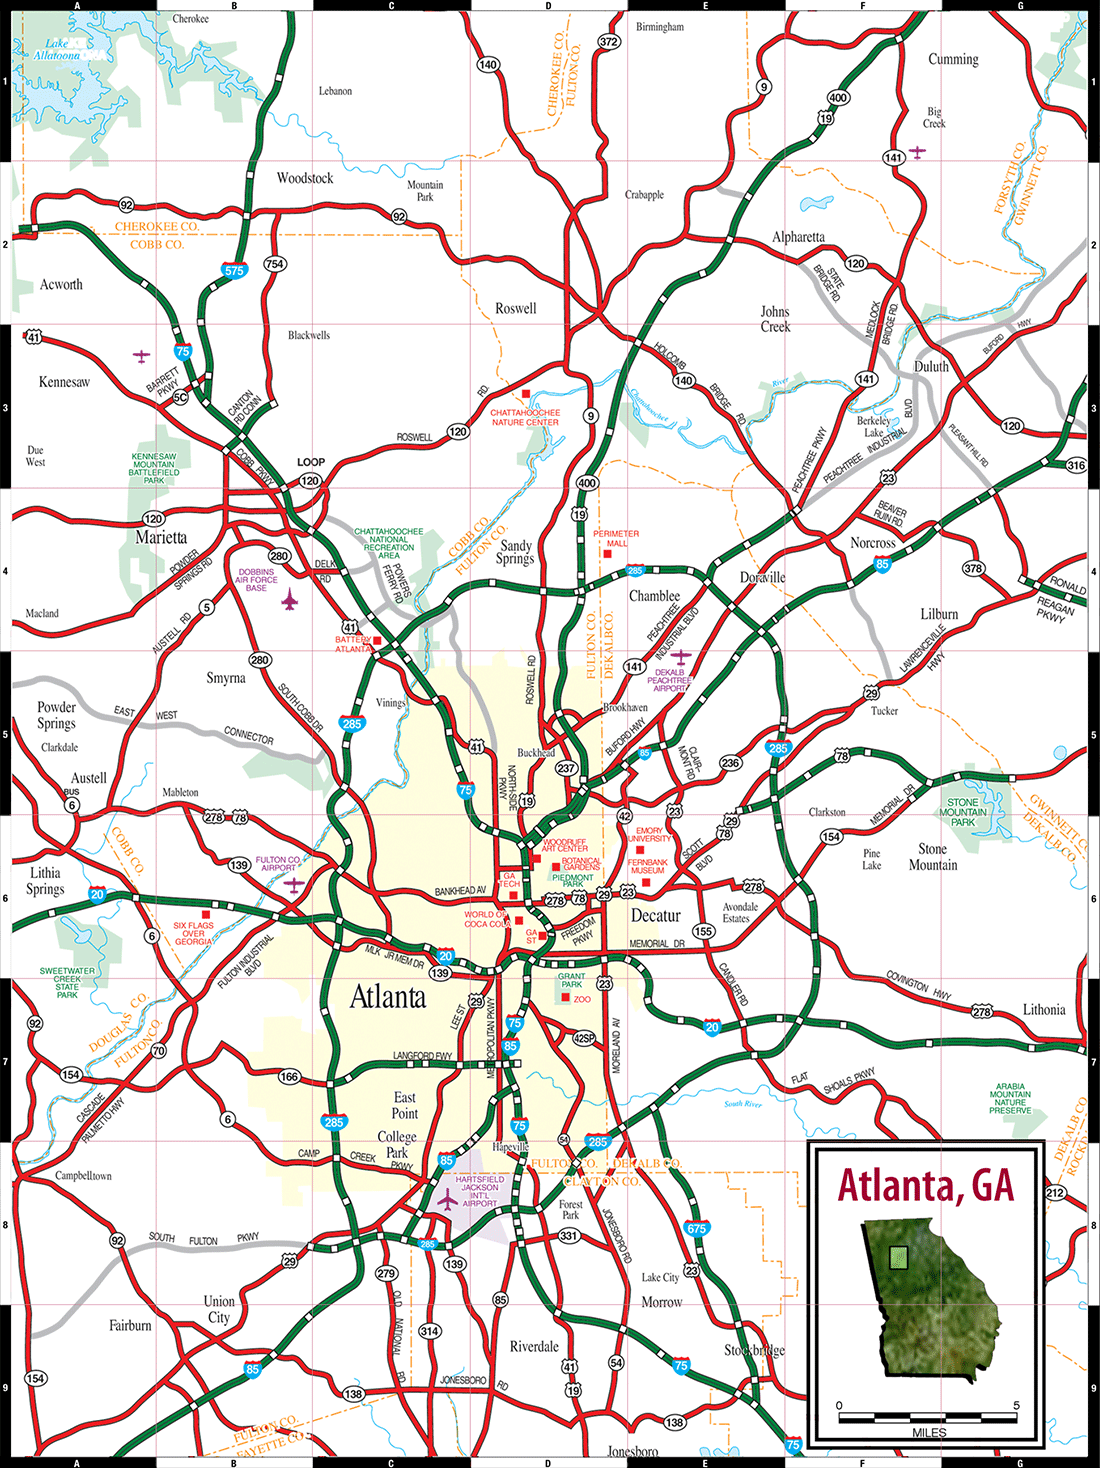 Map Of North Atlanta Ga 